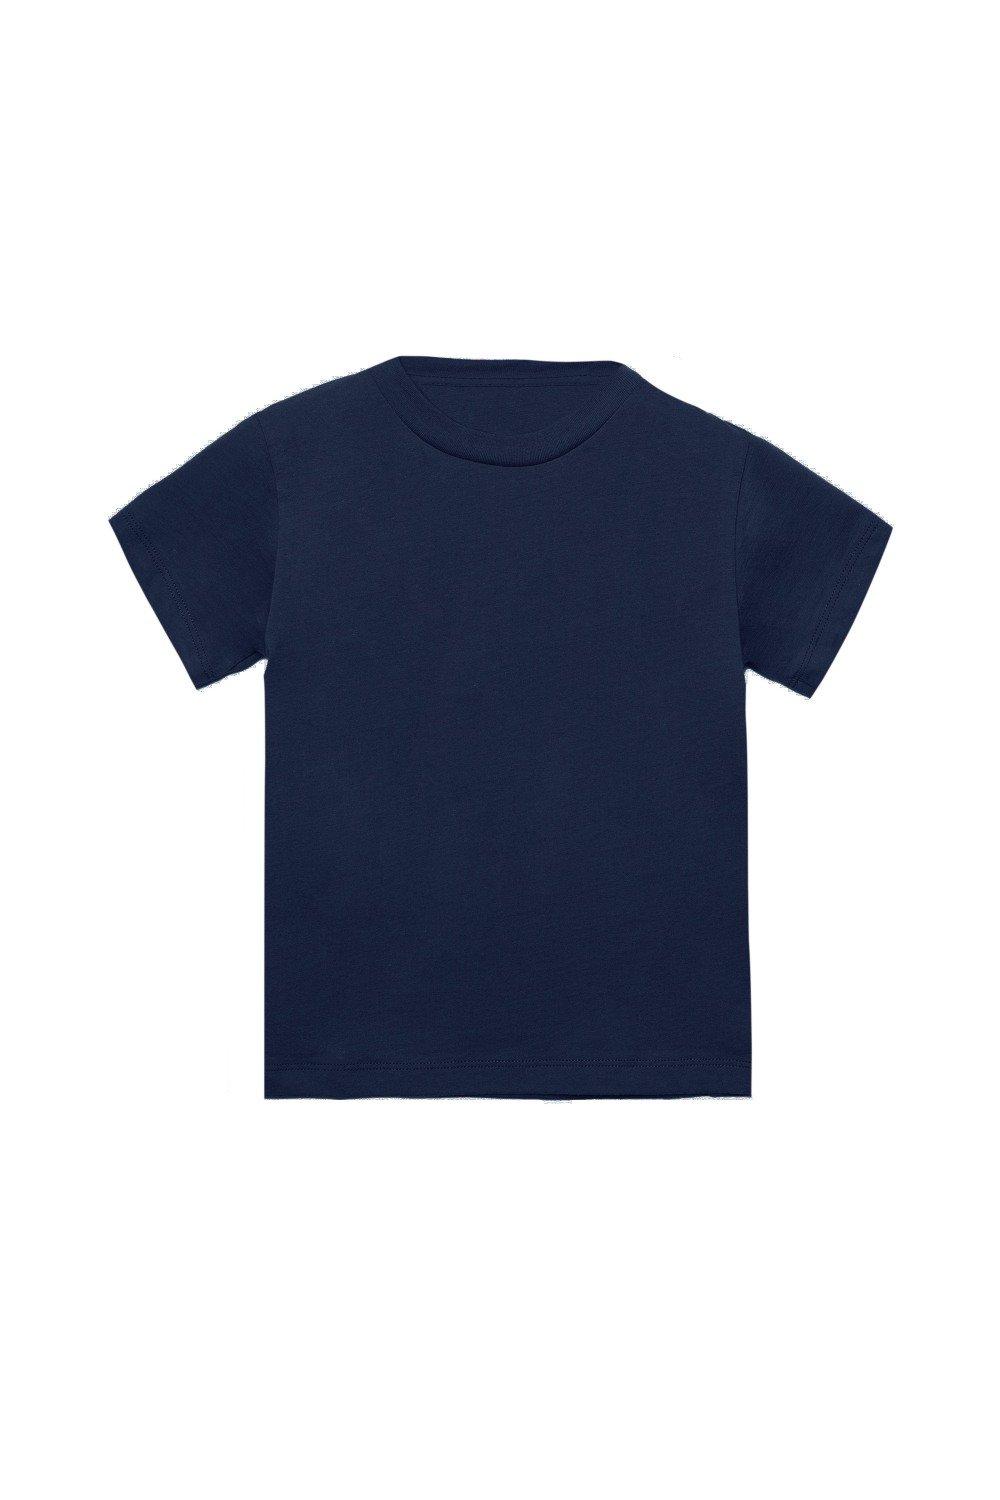 Jersey Short Sleeve T-Shirt (Pack of 2)